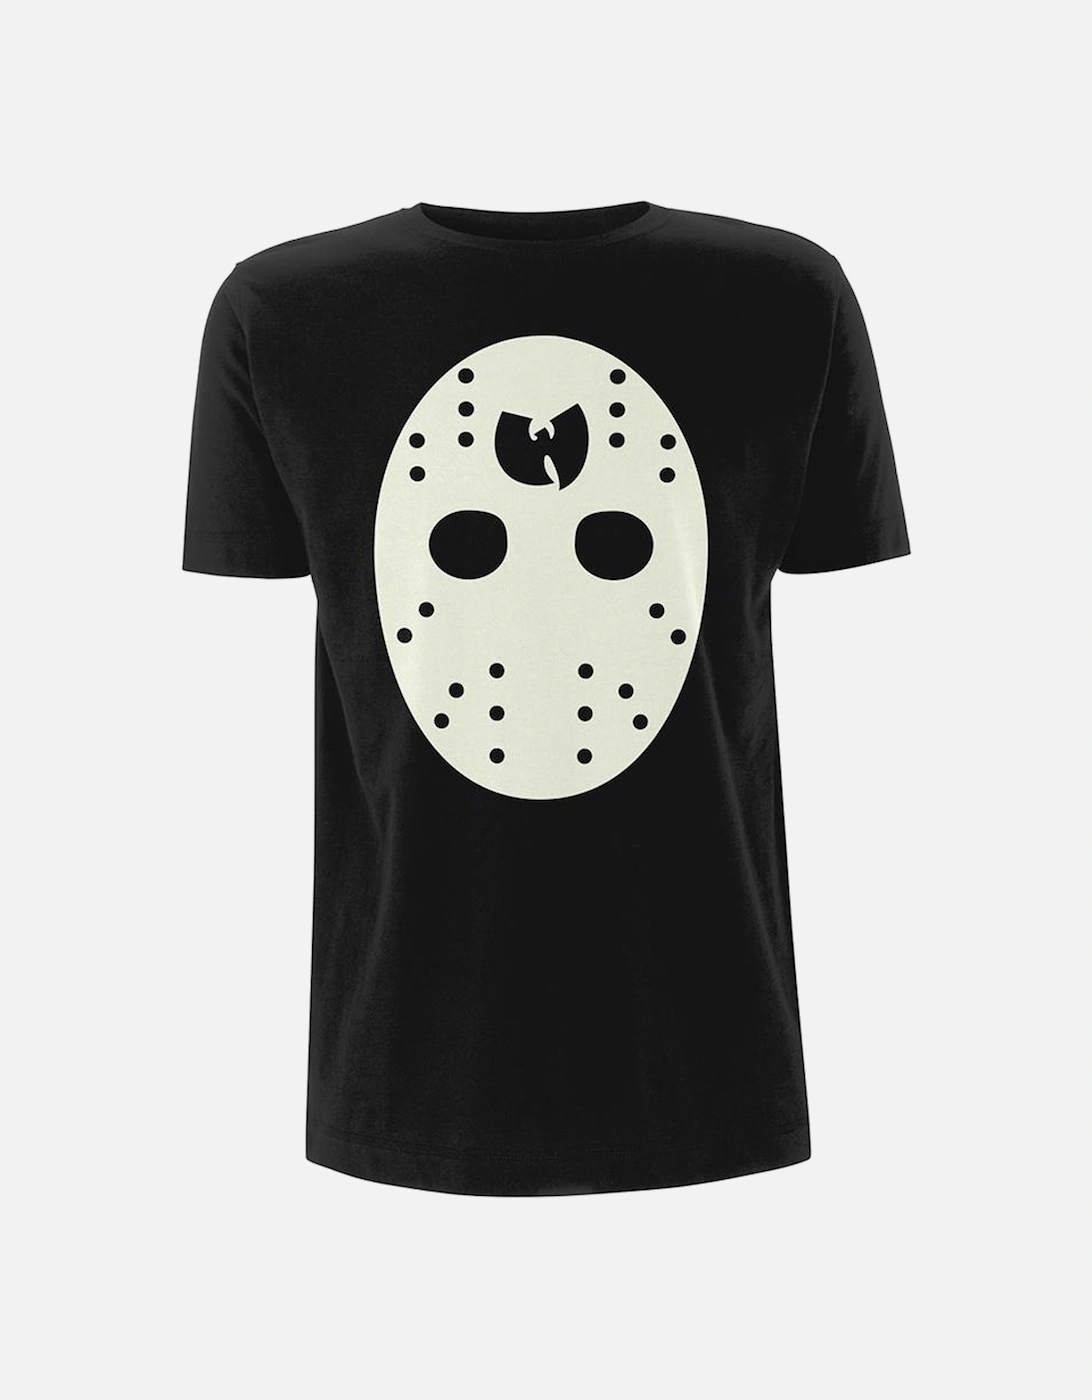 Unisex Adult Mask T-Shirt, 4 of 3